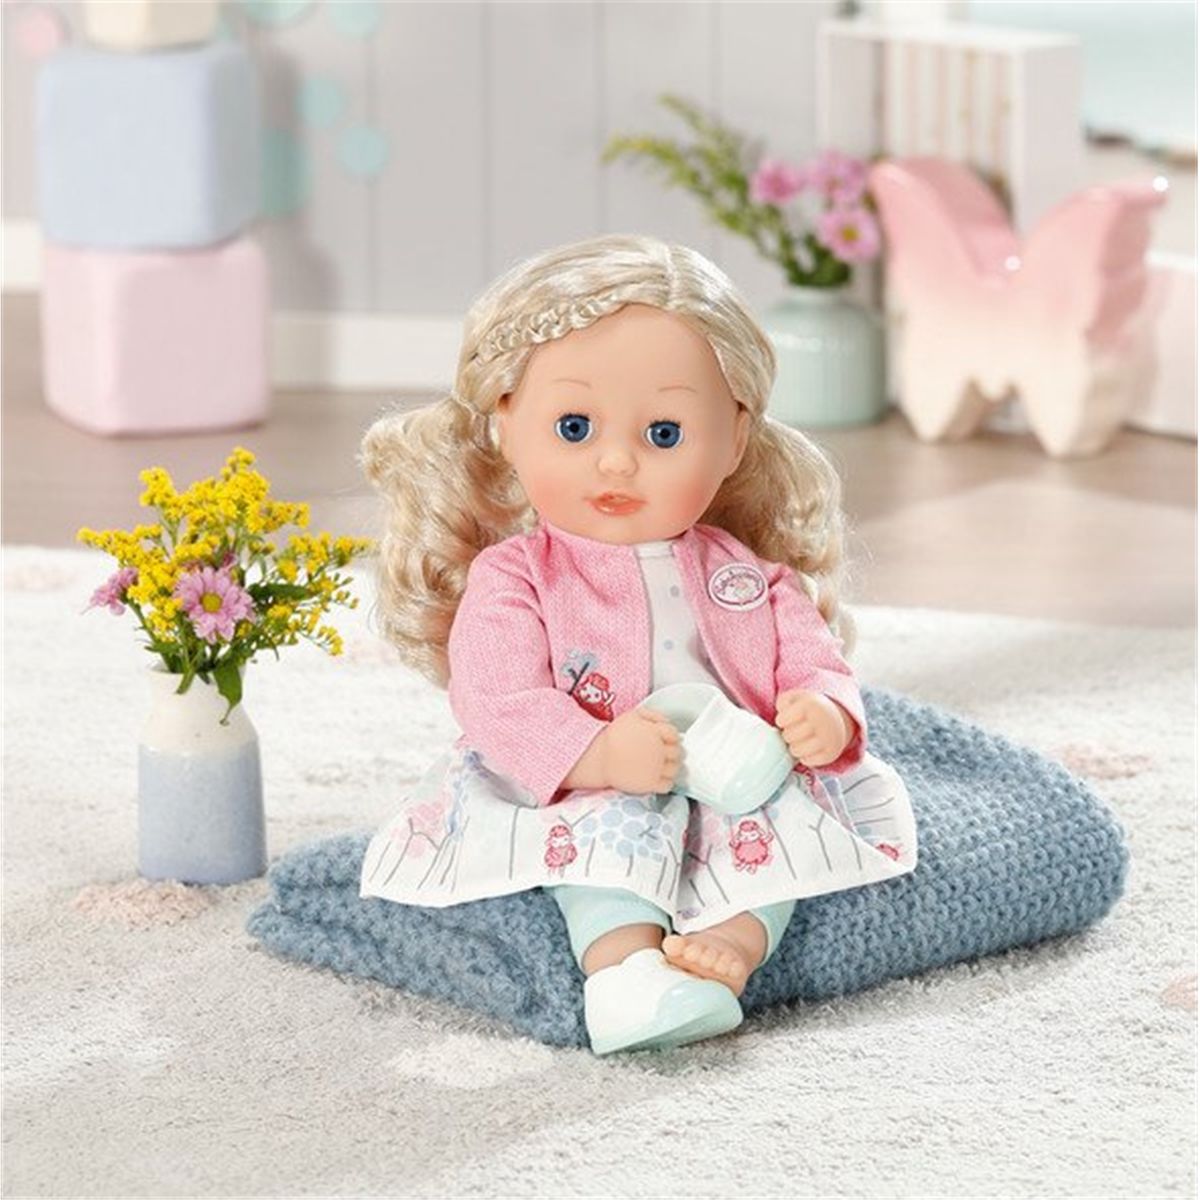 Bébé poupées vêtements fait main pour s'adapter Baby Born Annabell 18 in Pjs environ 45.72 cm 